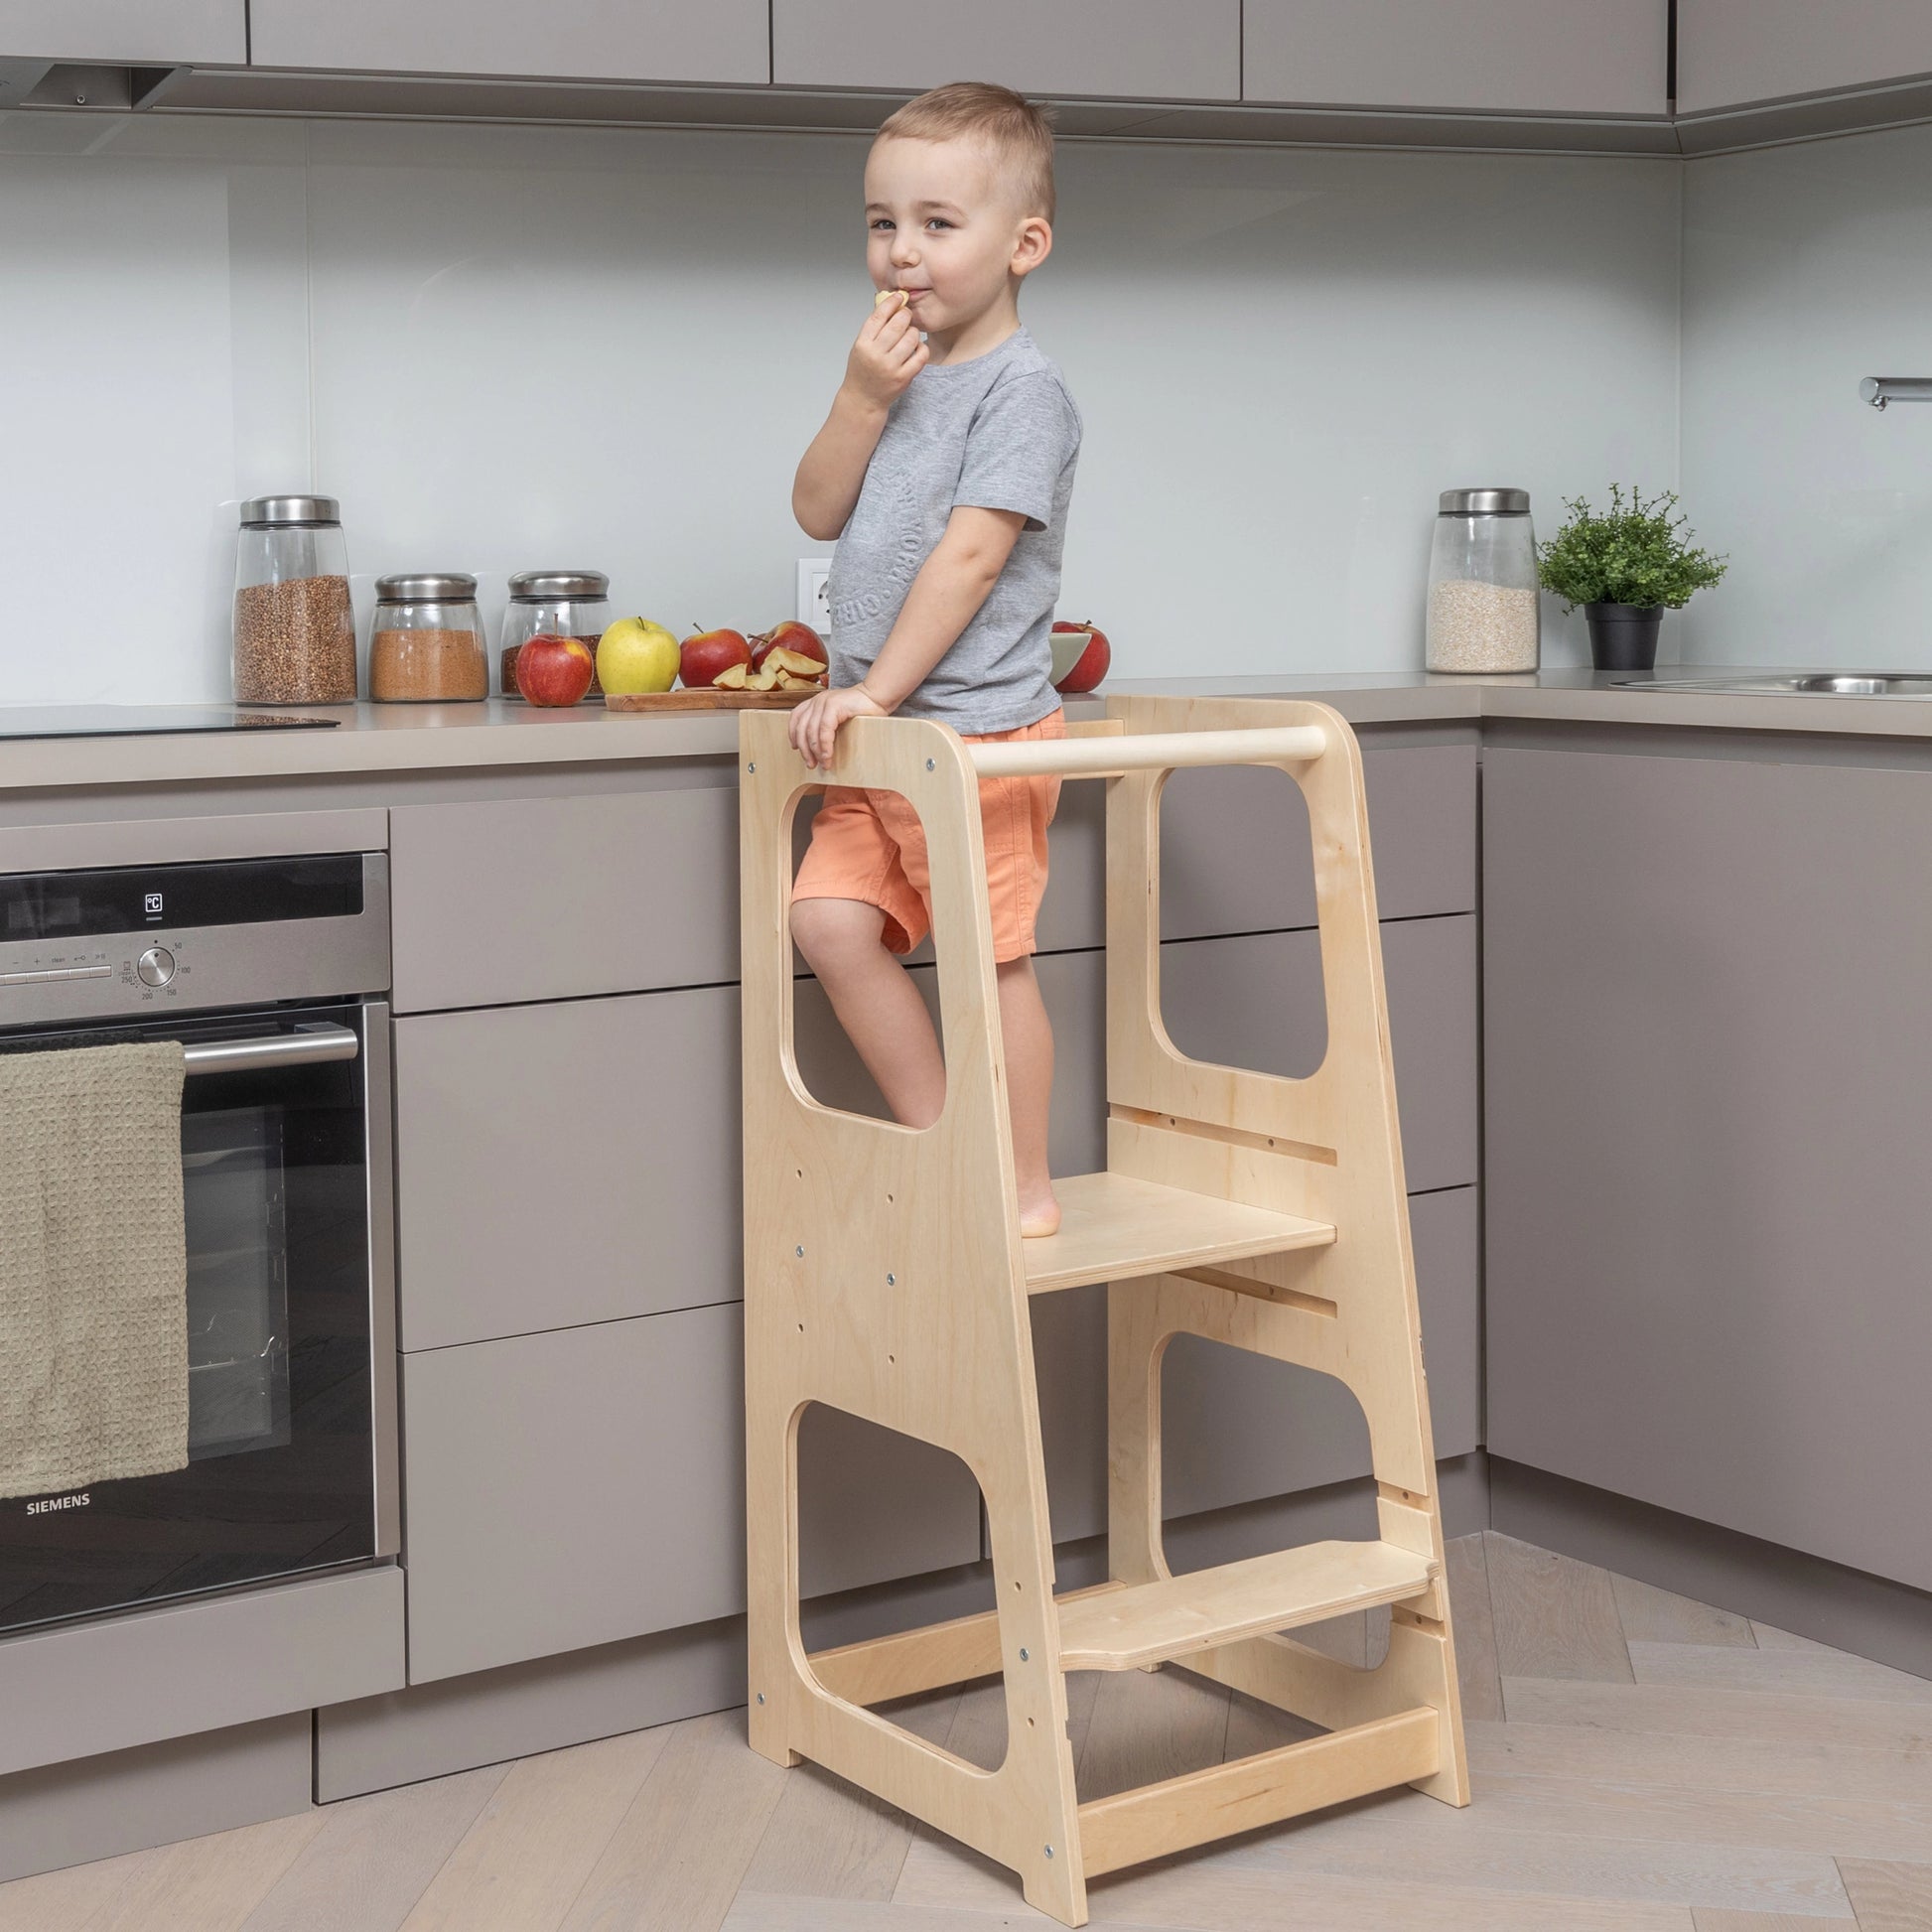 Torre di apprendimento regolabile, sgabello a torre per bambini che aiuta  in cucina - ToyBox